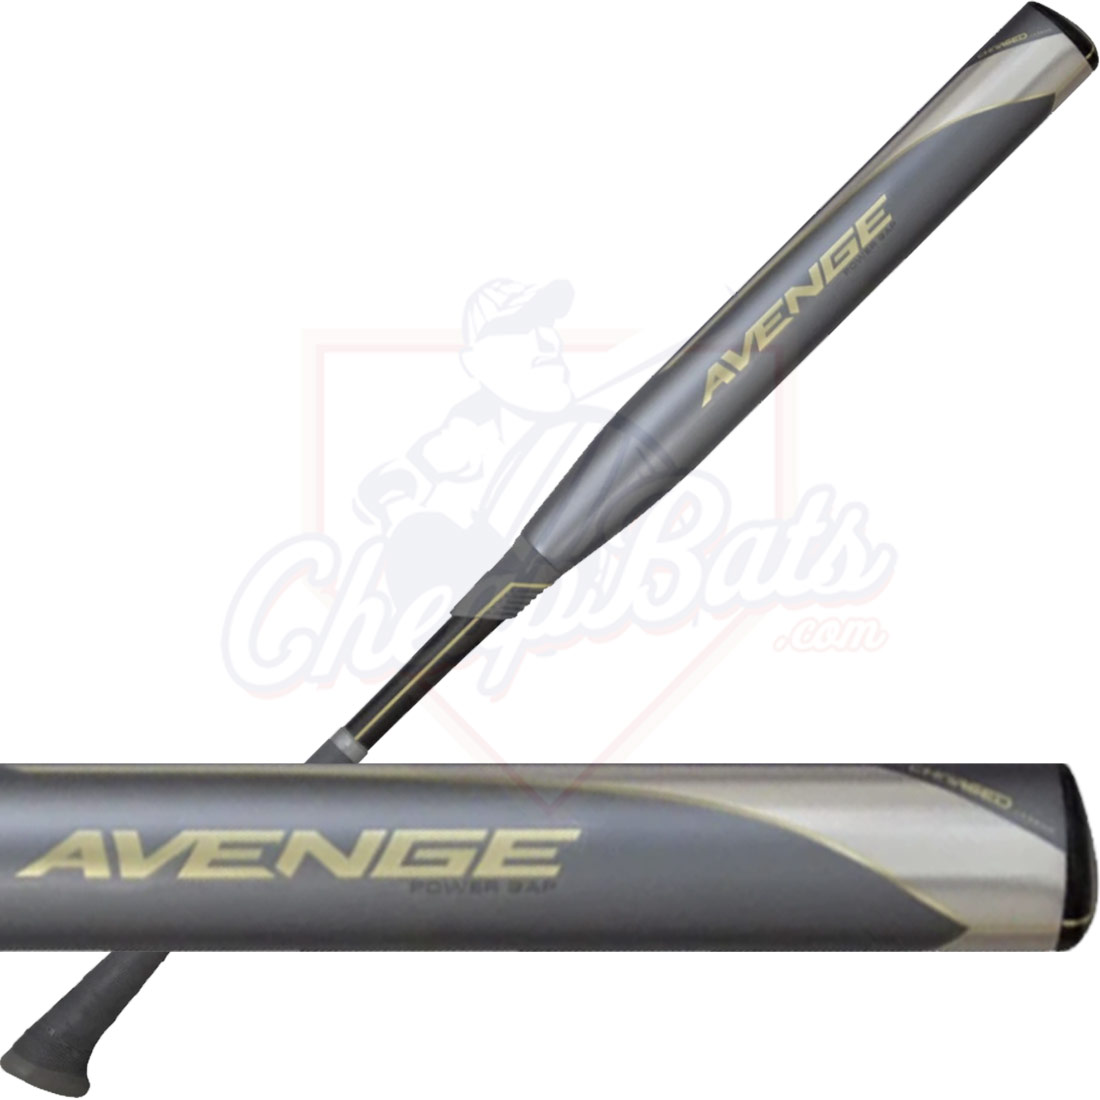 2022 Axe Avenge Power Gap Fastpitch Softball Bat L150HP